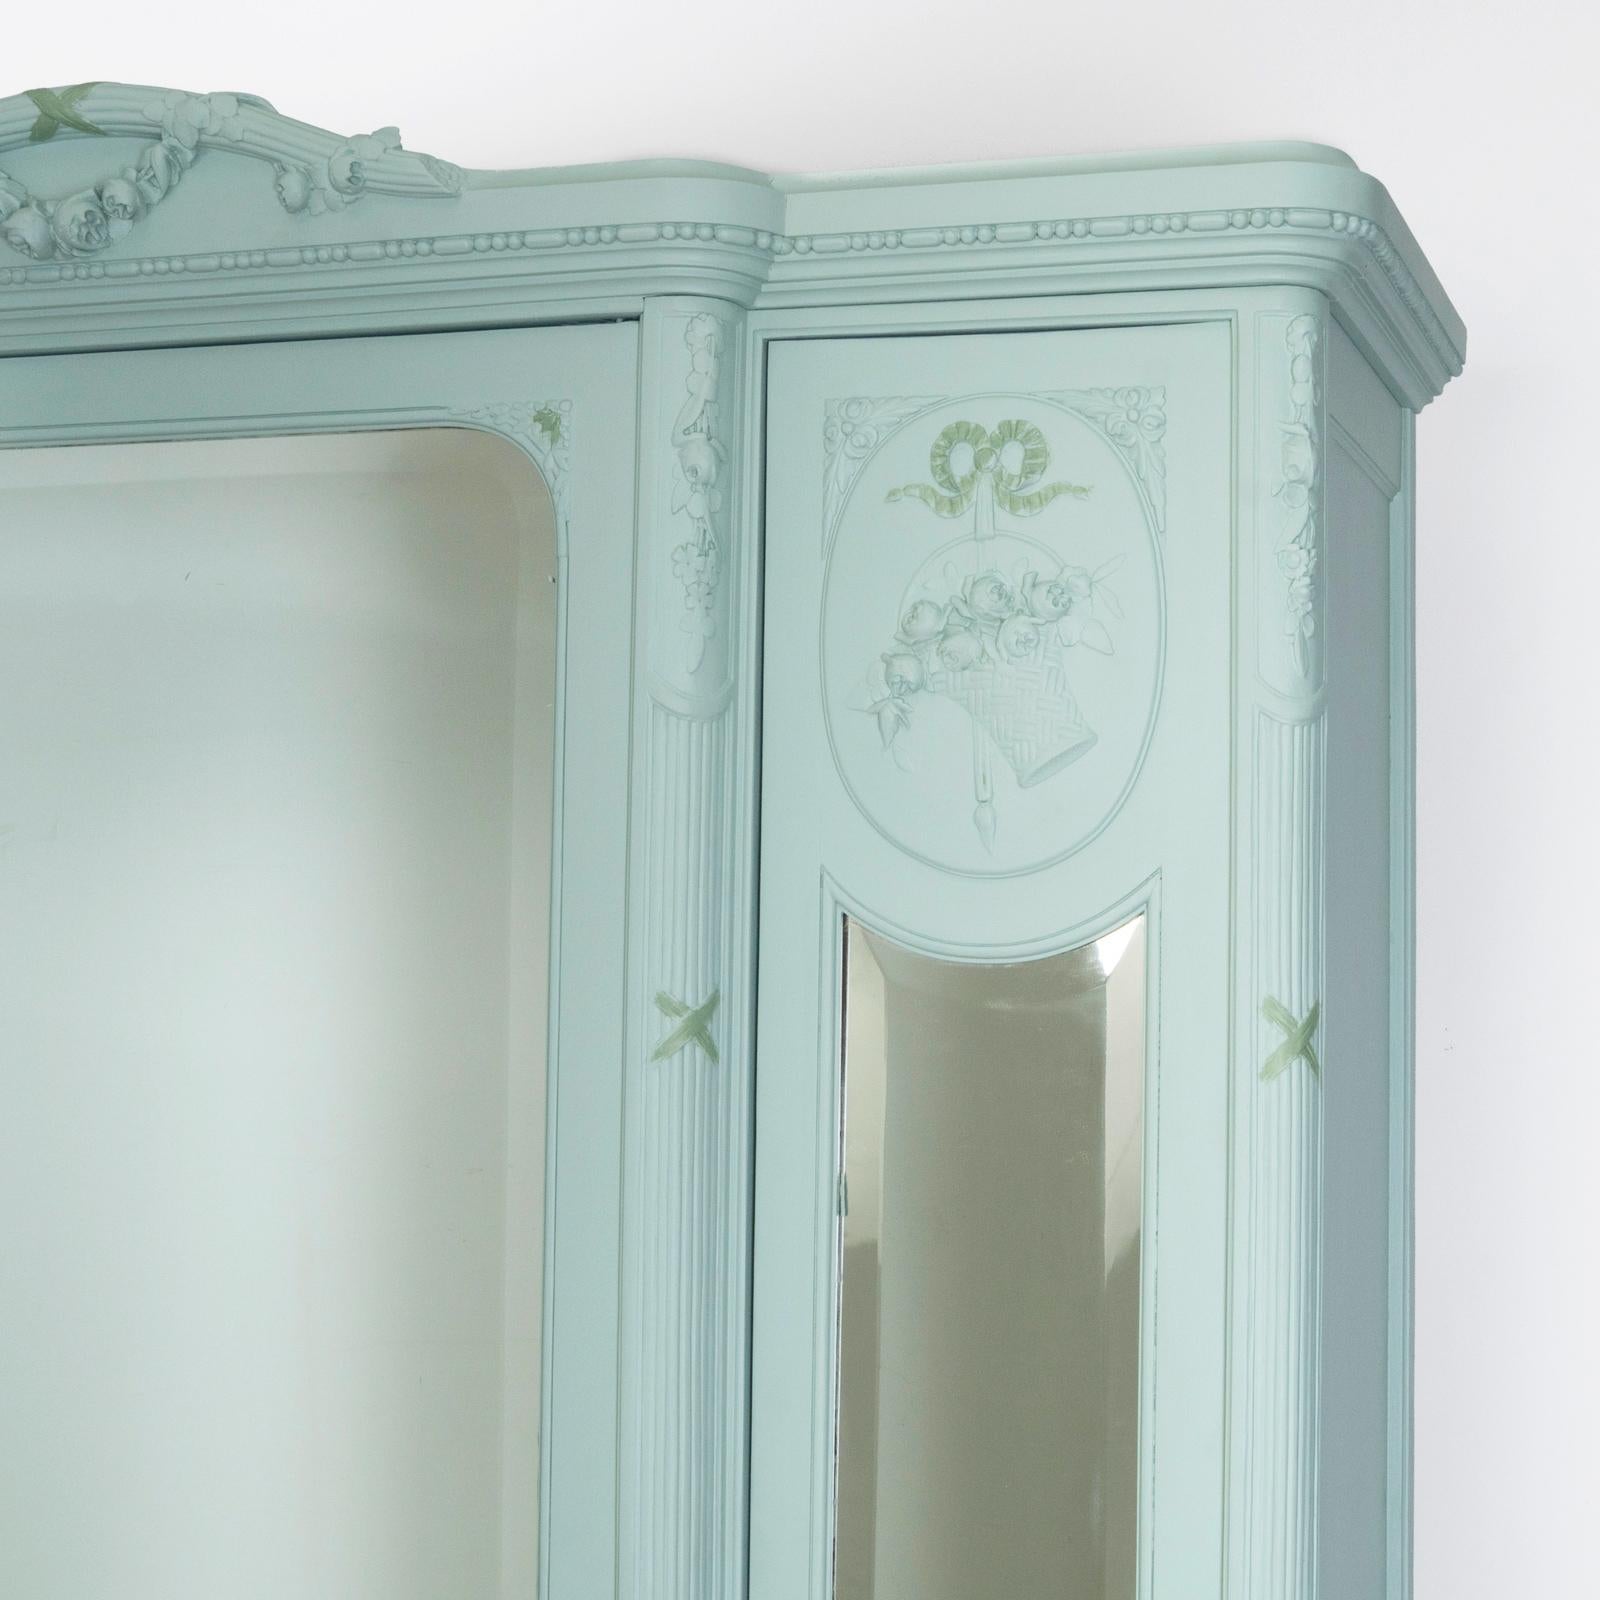 Exquisite 19. Jahrhundert Louis XVI Stil Triple Door Mirror Armoire - eine perfekte Mischung aus Eleganz, Design und Praktikabilität!

Die seitlichen Spiegeltüren sind mit dekorativen ovalen Paneelen verziert und bieten einen außergewöhnlichen